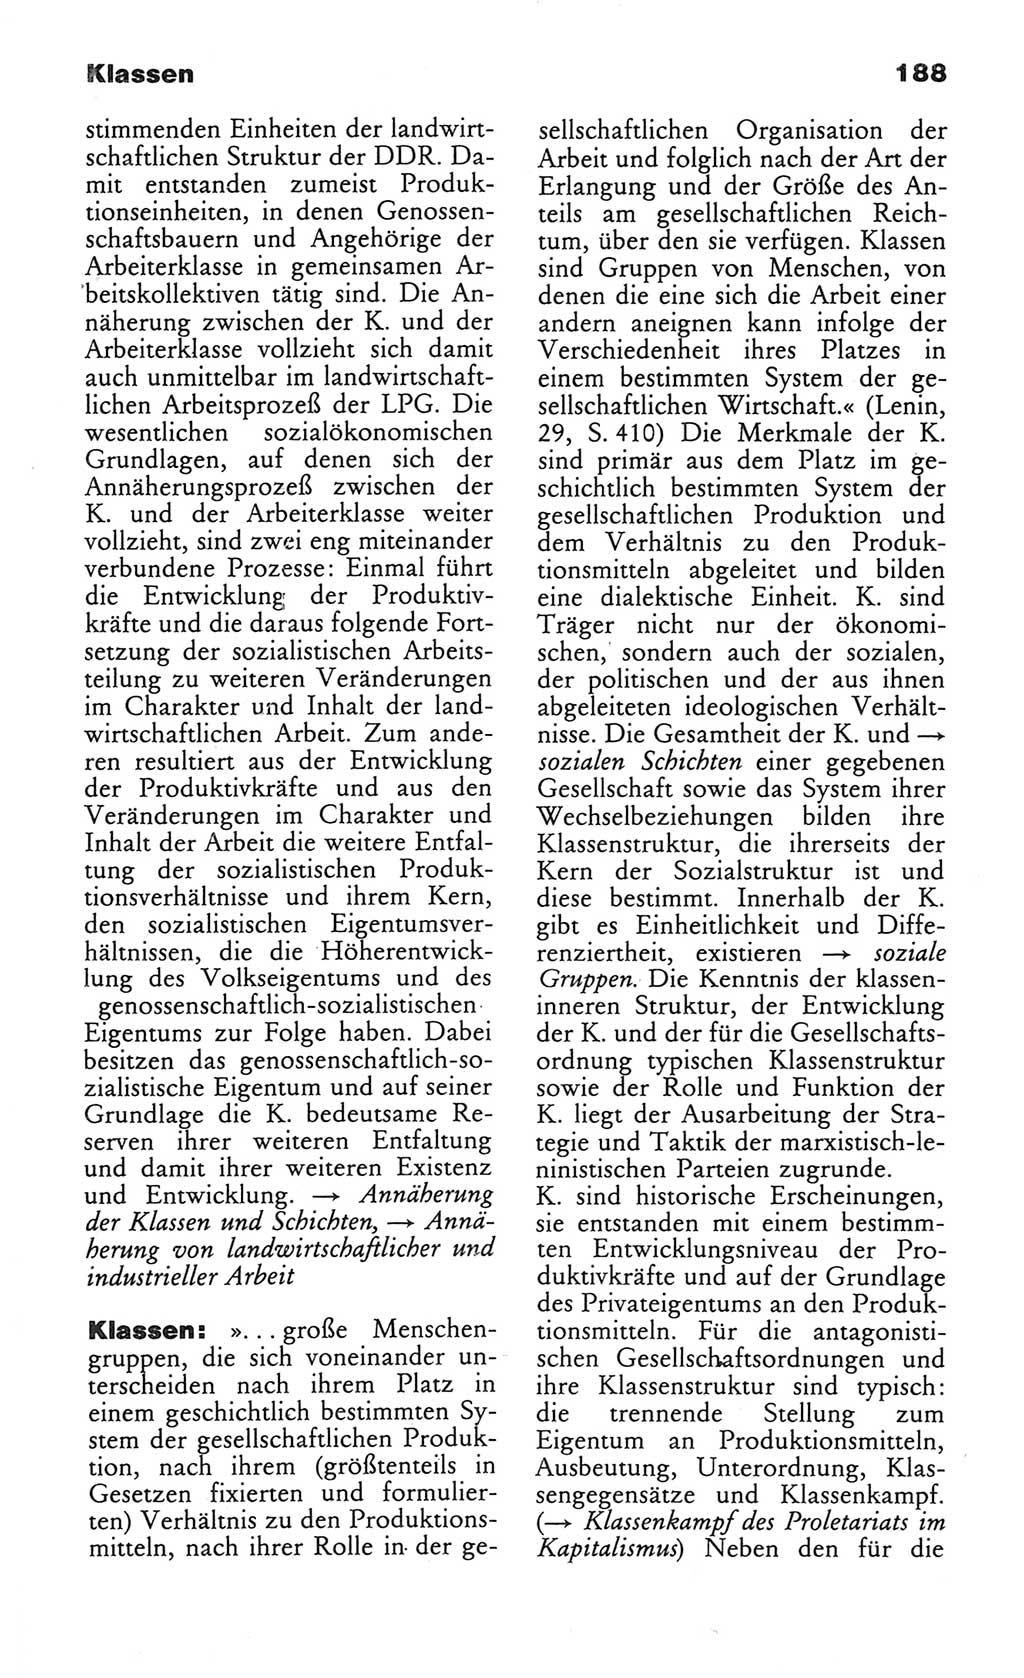 Wörterbuch des wissenschaftlichen Kommunismus [Deutsche Demokratische Republik (DDR)] 1984, Seite 188 (Wb. wiss. Komm. DDR 1984, S. 188)